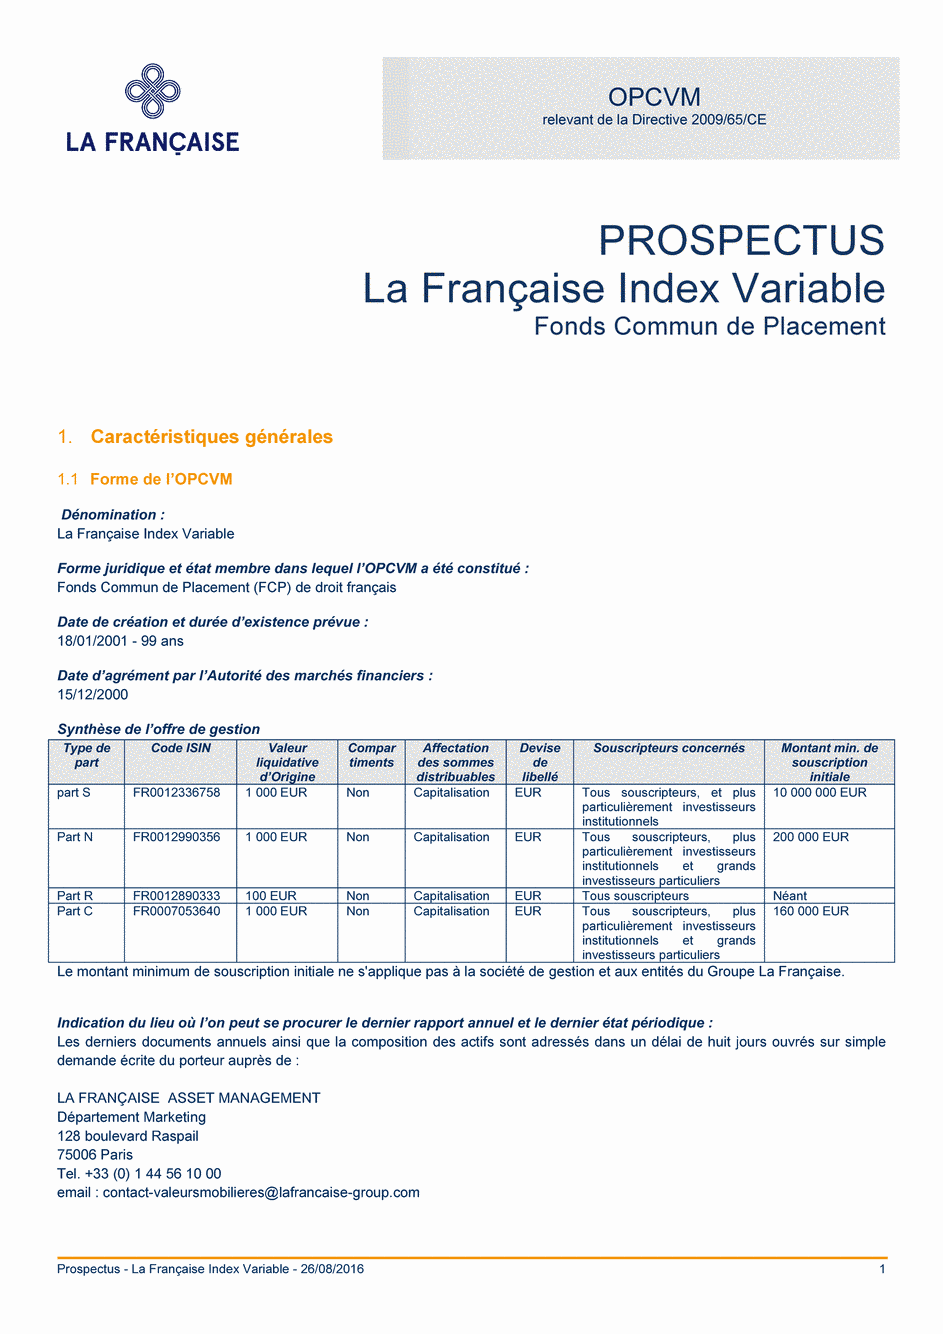 Prospectus La Française Moderate Multibonds - Part R - 26/08/2016 - Français